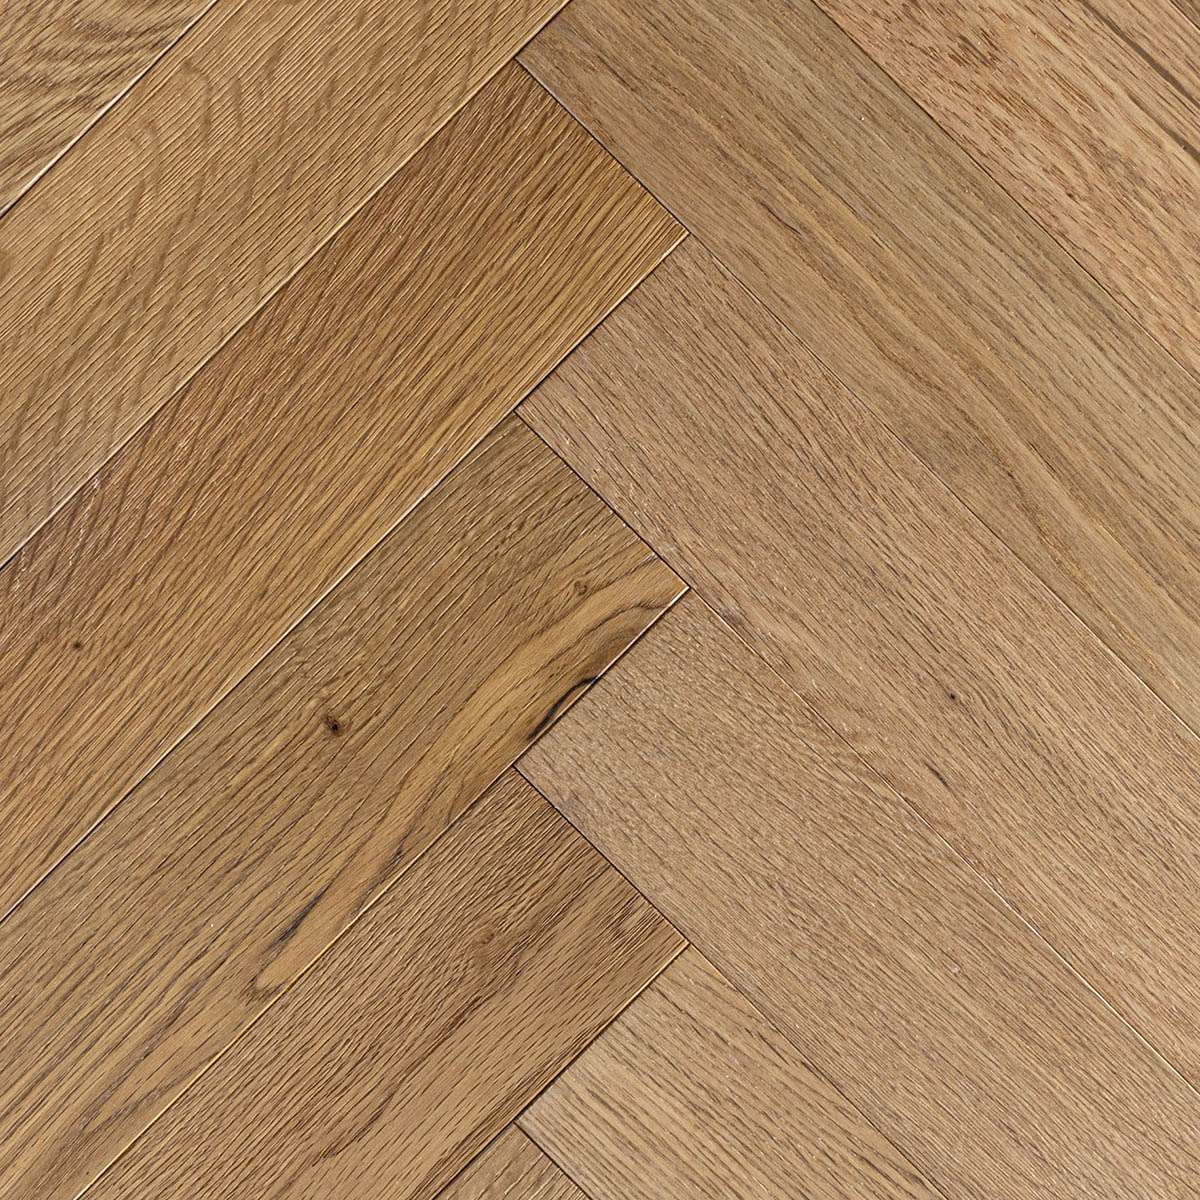 Estone Walk - Light Oak Rustic Grade Parquet Wood Floor